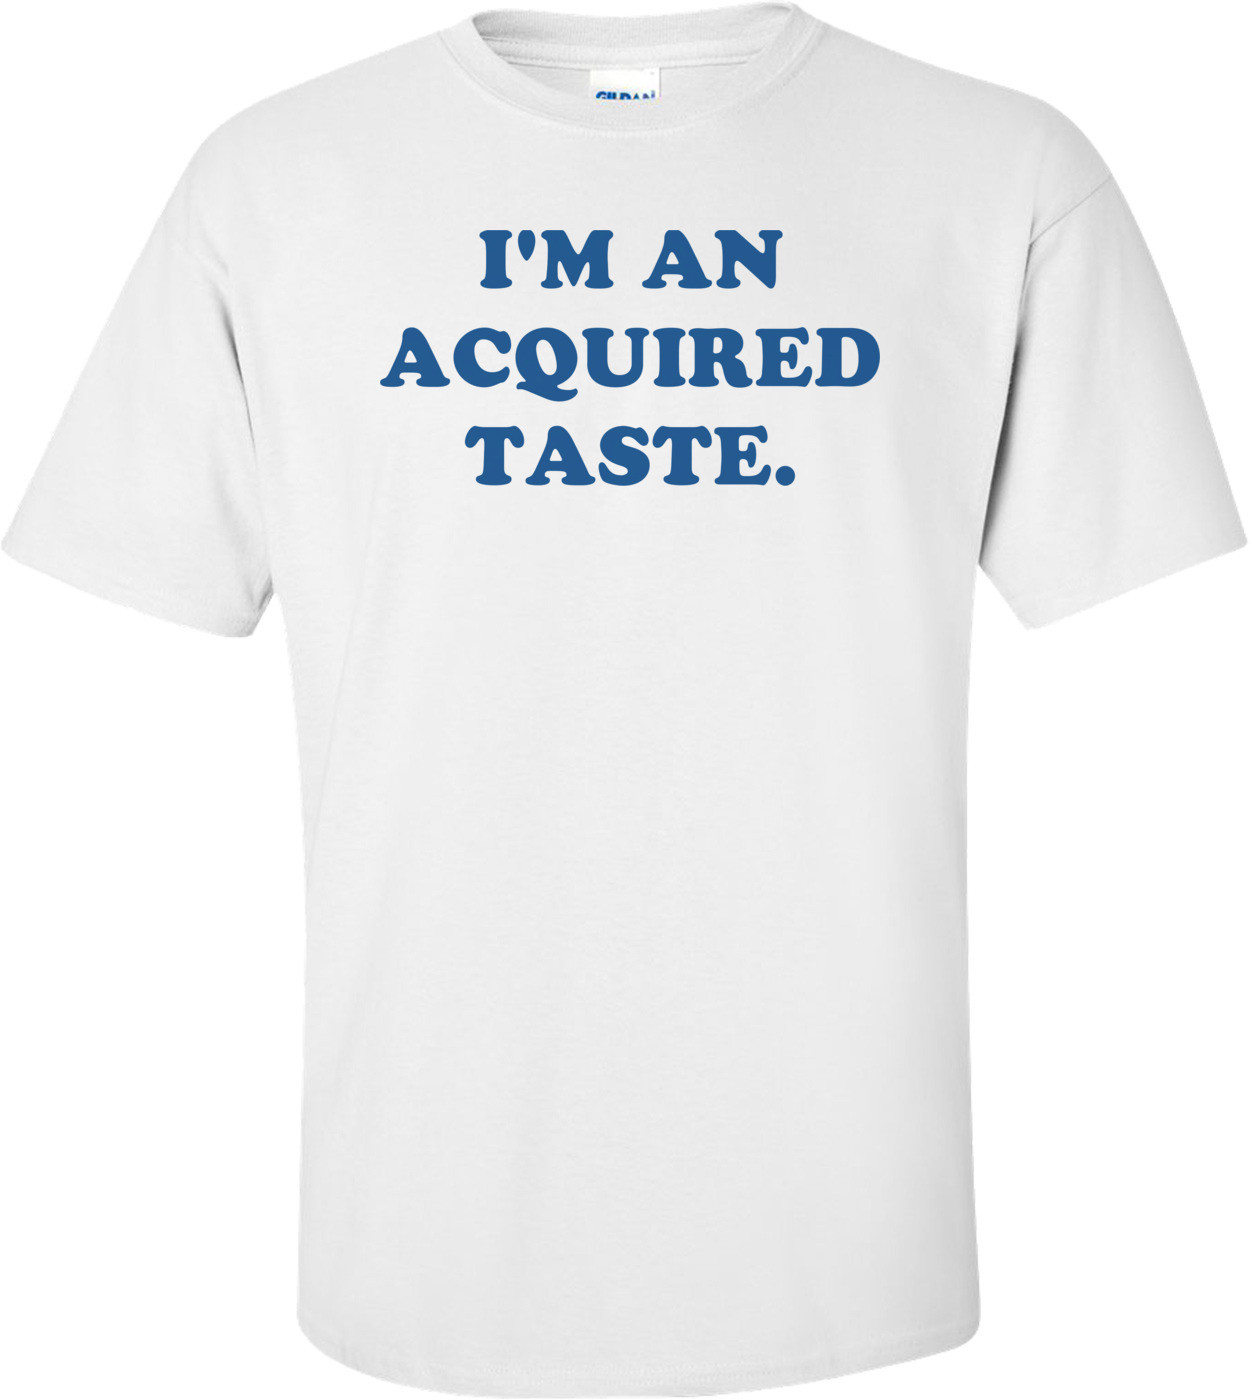 I'M AN ACQUIRED TASTE. Shirt